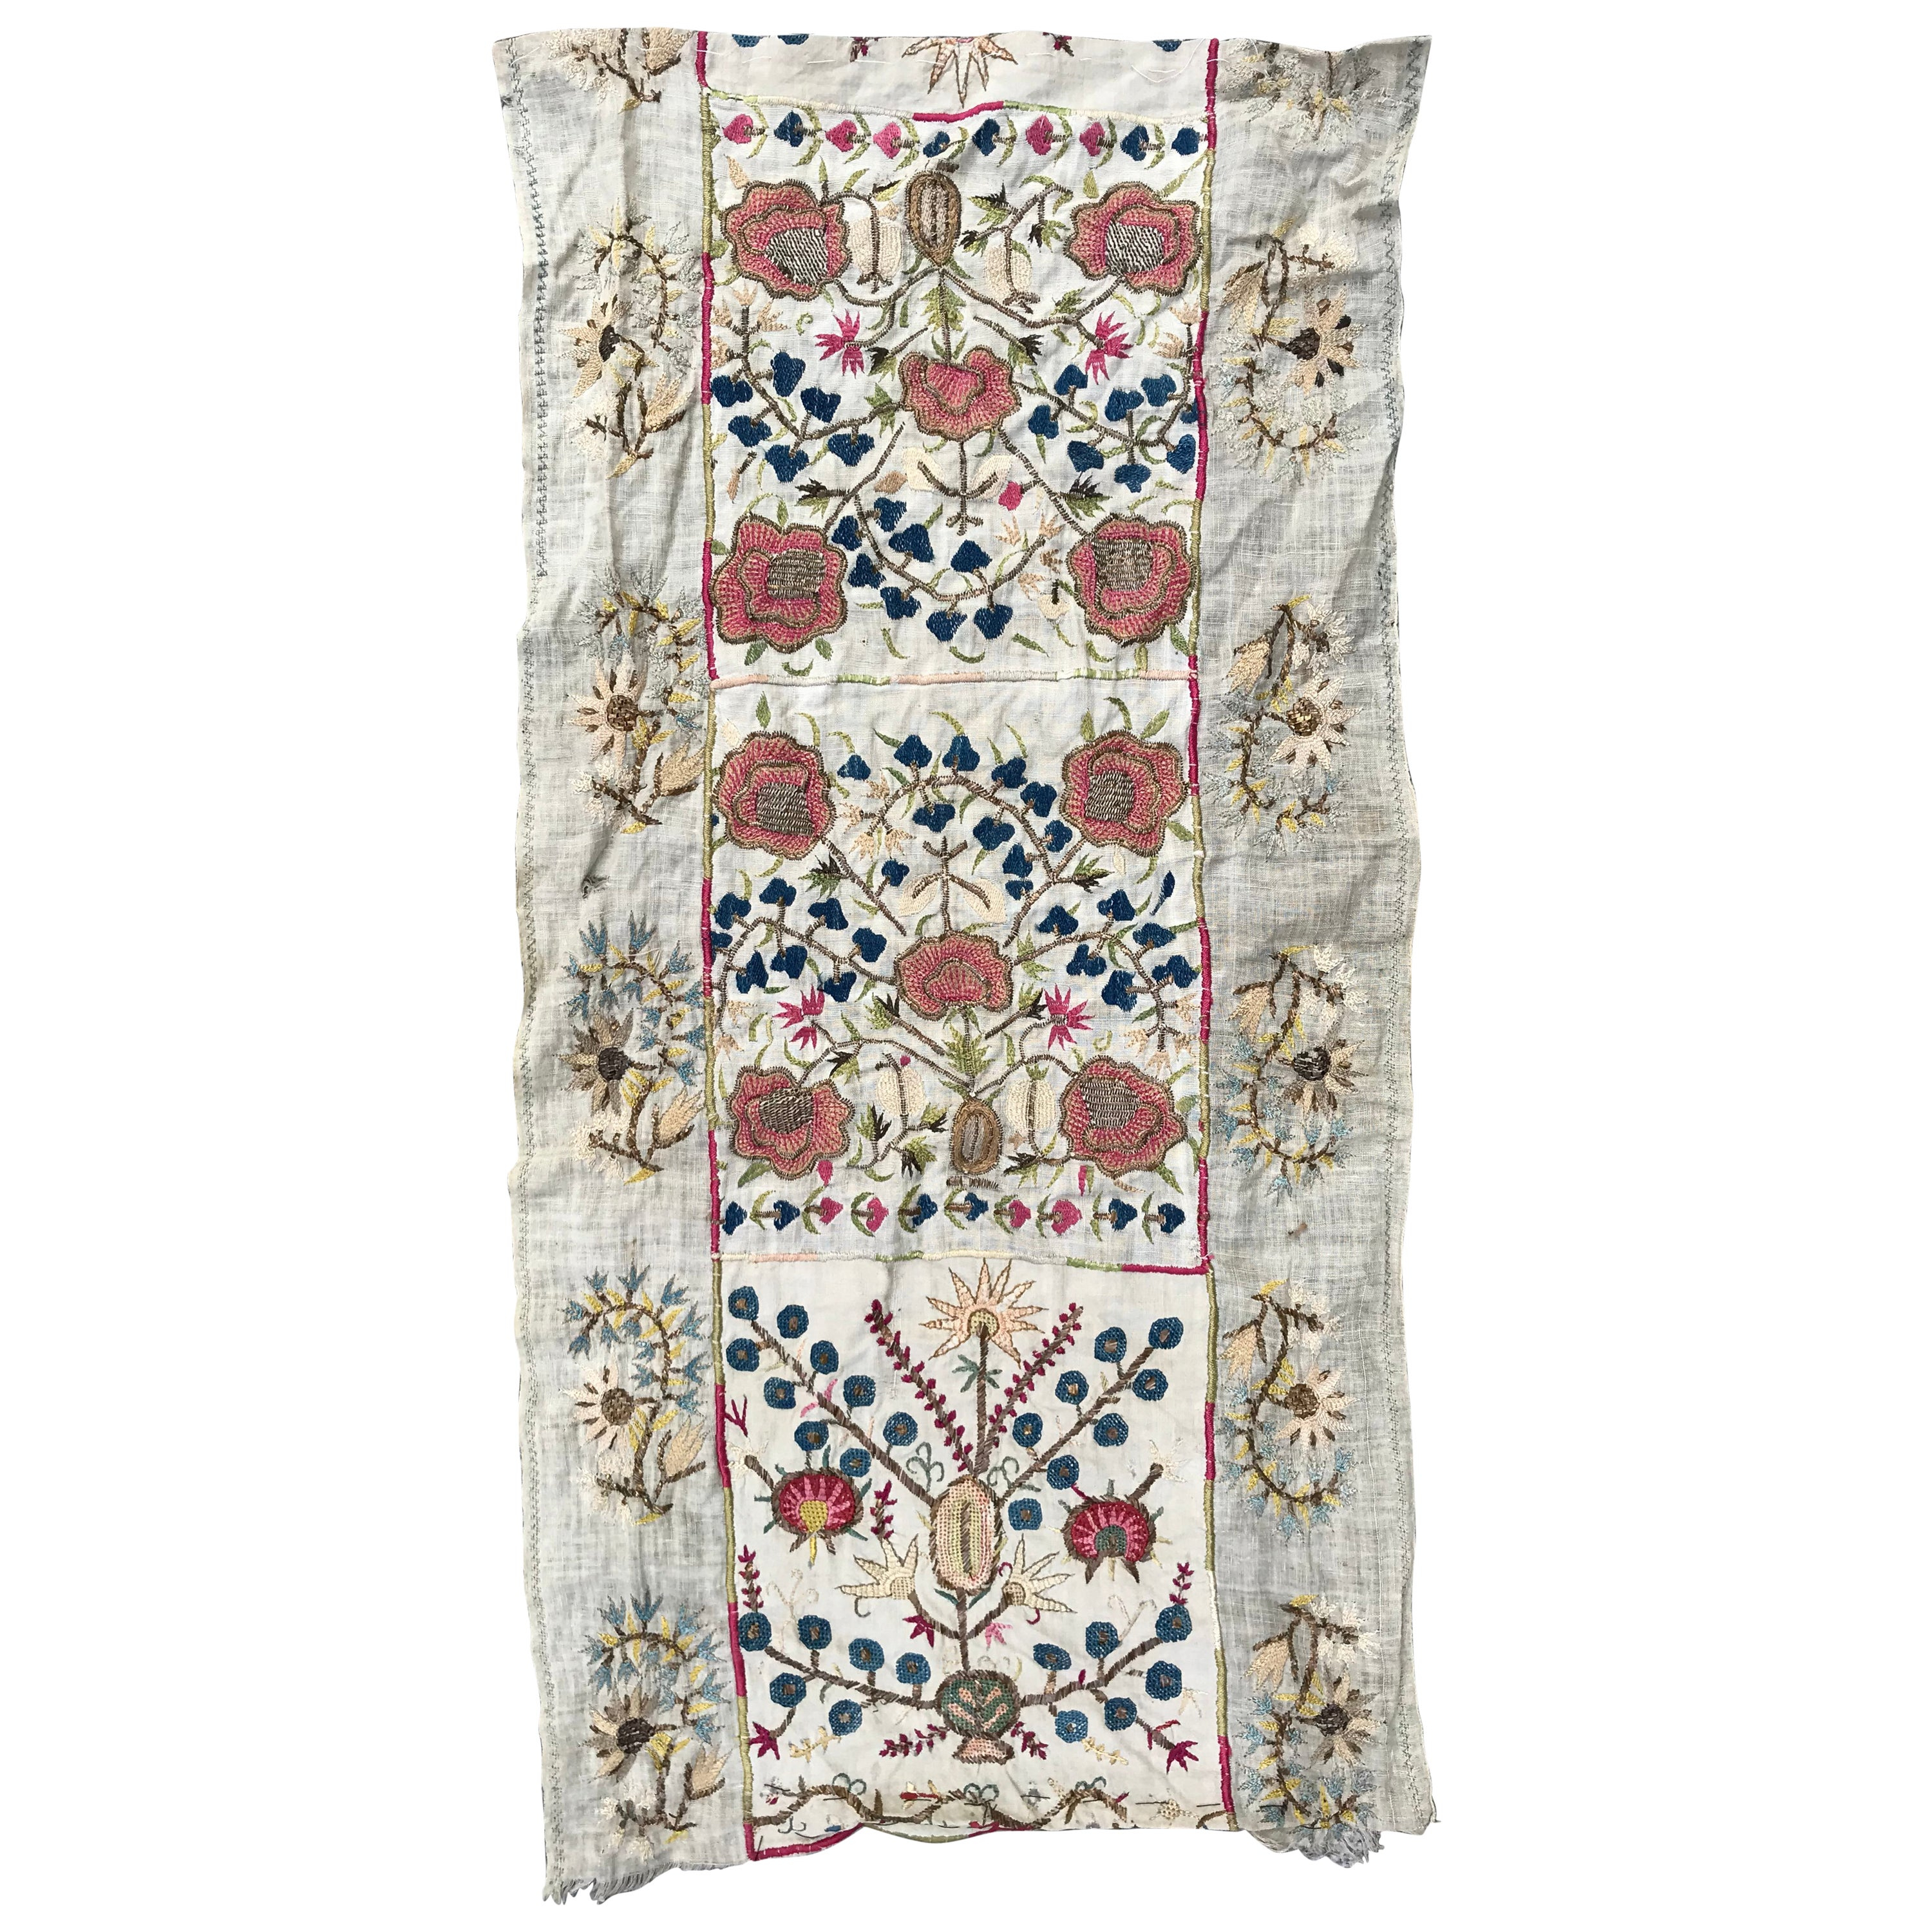 Turkish Embroidery Patterns Antique Turkish Ottoman Embroidery Anatolian Embroidered Antique Rug